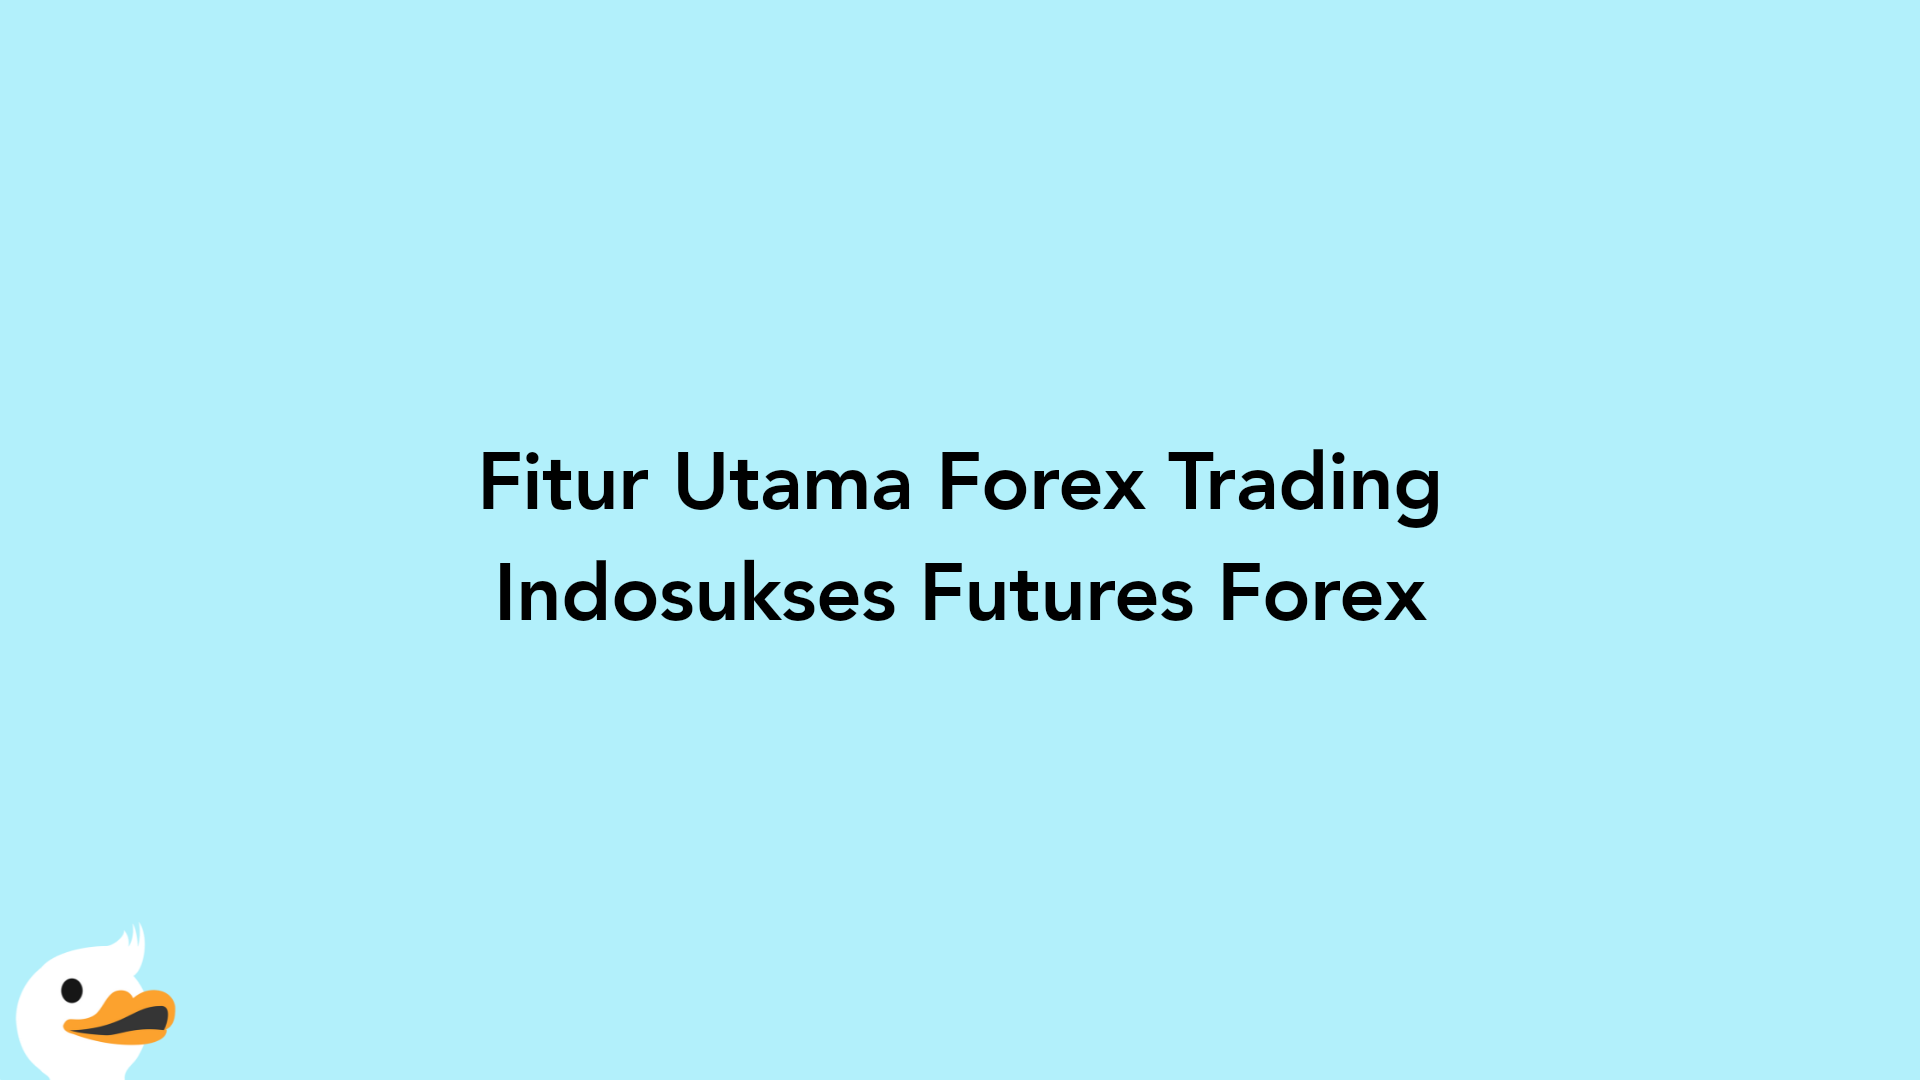 Fitur Utama Forex Trading Indosukses Futures Forex